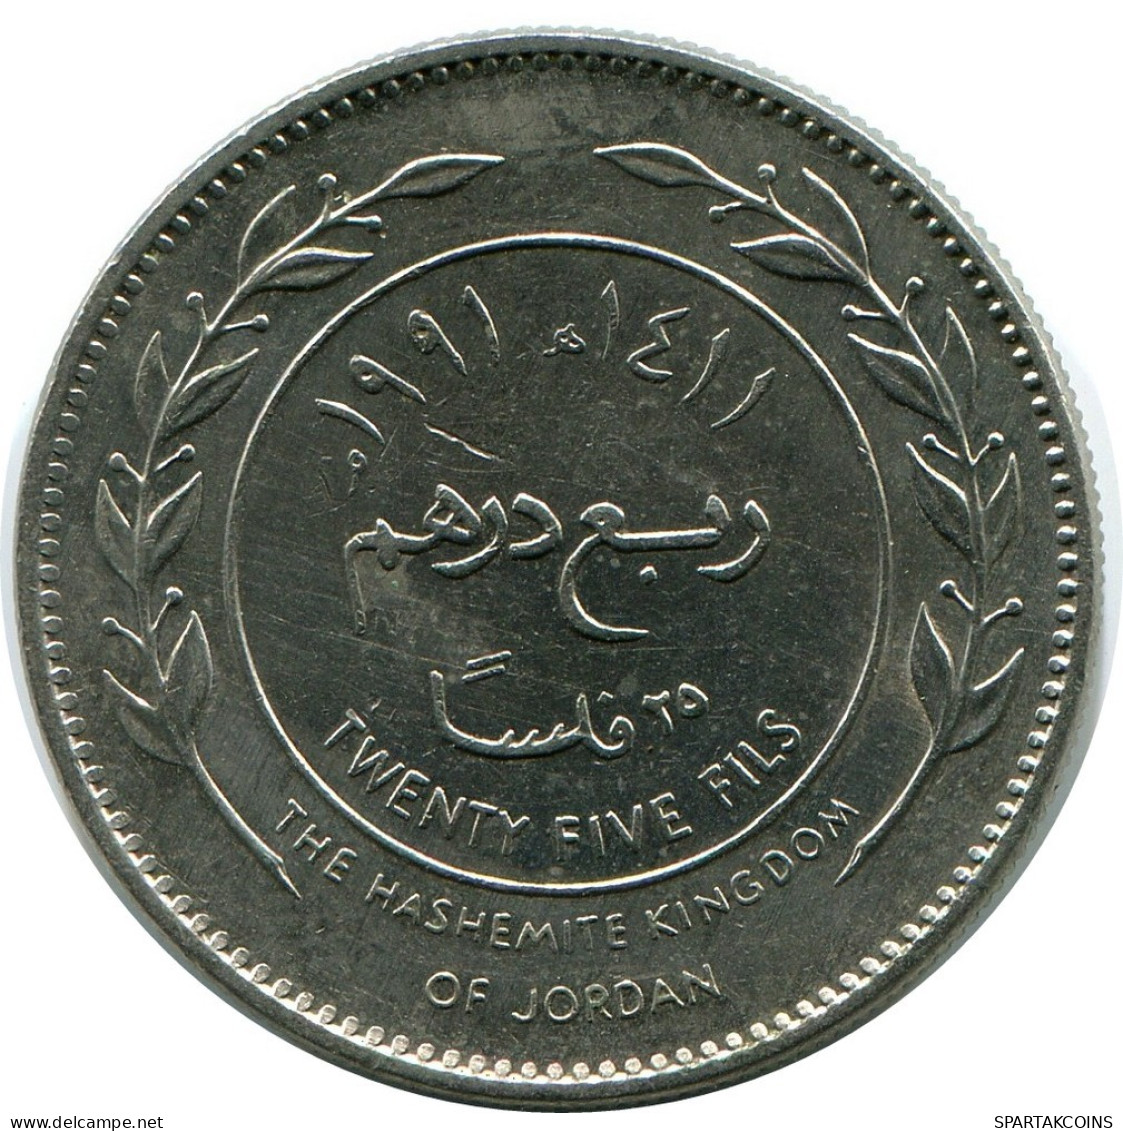 ¼ DIRHAM / 25 FILS 1991 JORDANIA JORDAN Moneda #AP082.E.A - Giordania